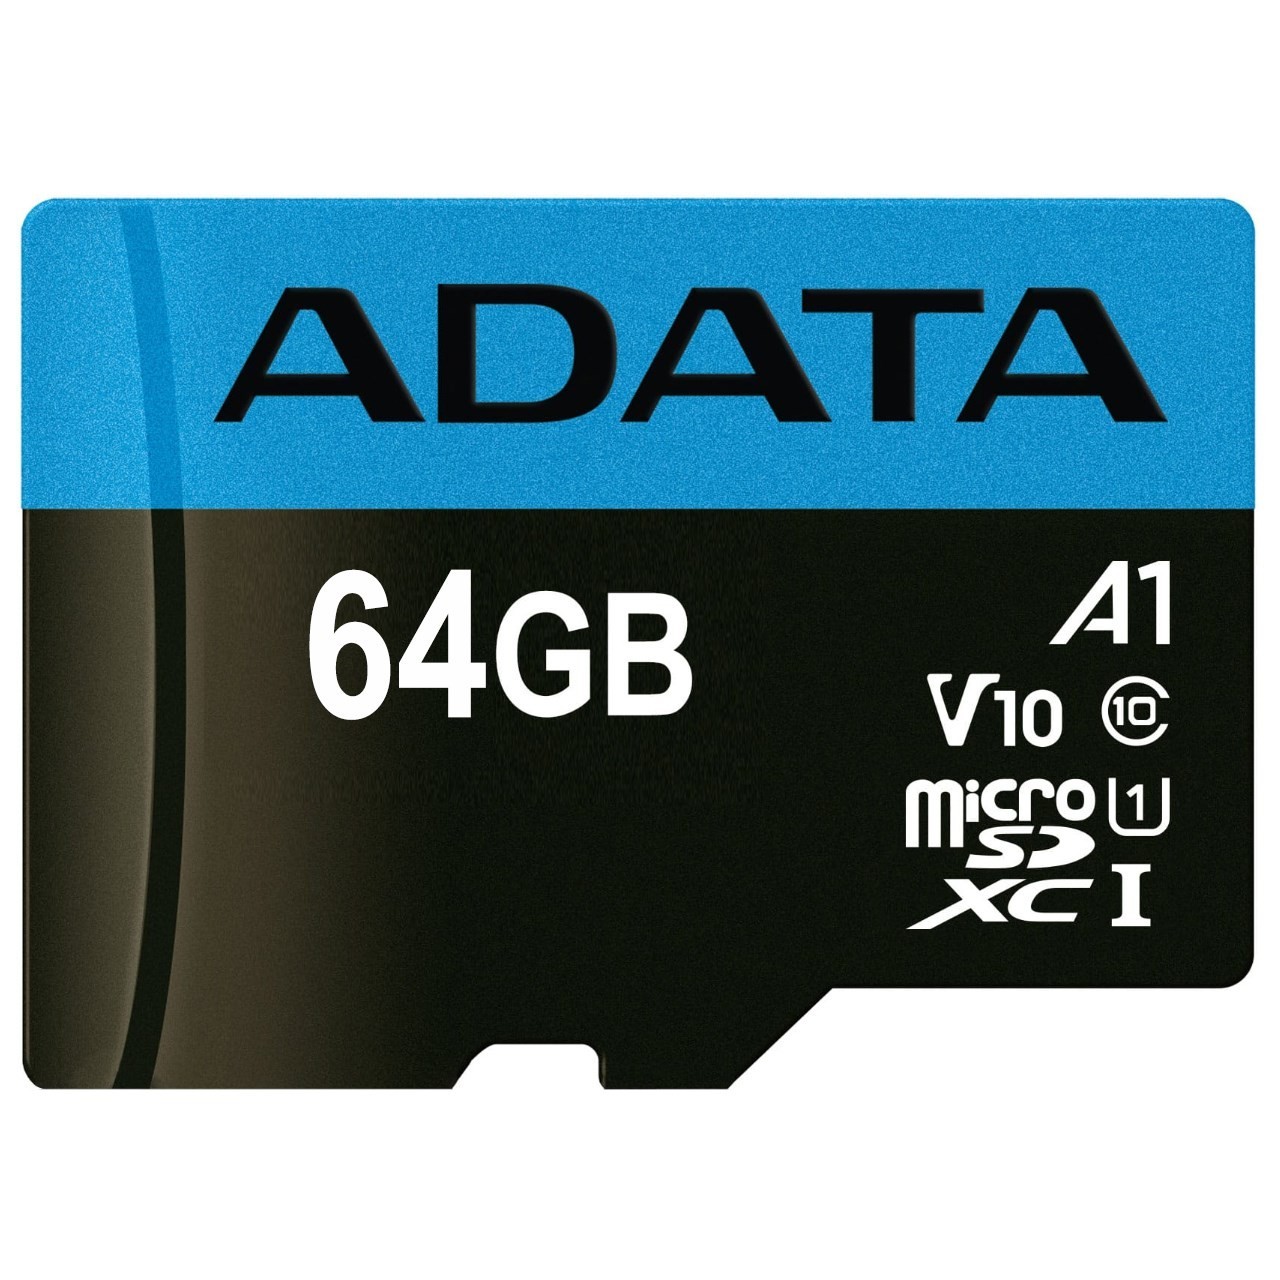 کارت حافظه microSDXC ای دیتا V10 R100W25 کلاس 10 استاندارد UHS-I U1 سرعت 100MBps ظرفیت 64 گیگابایت به همراه آداپتور SD